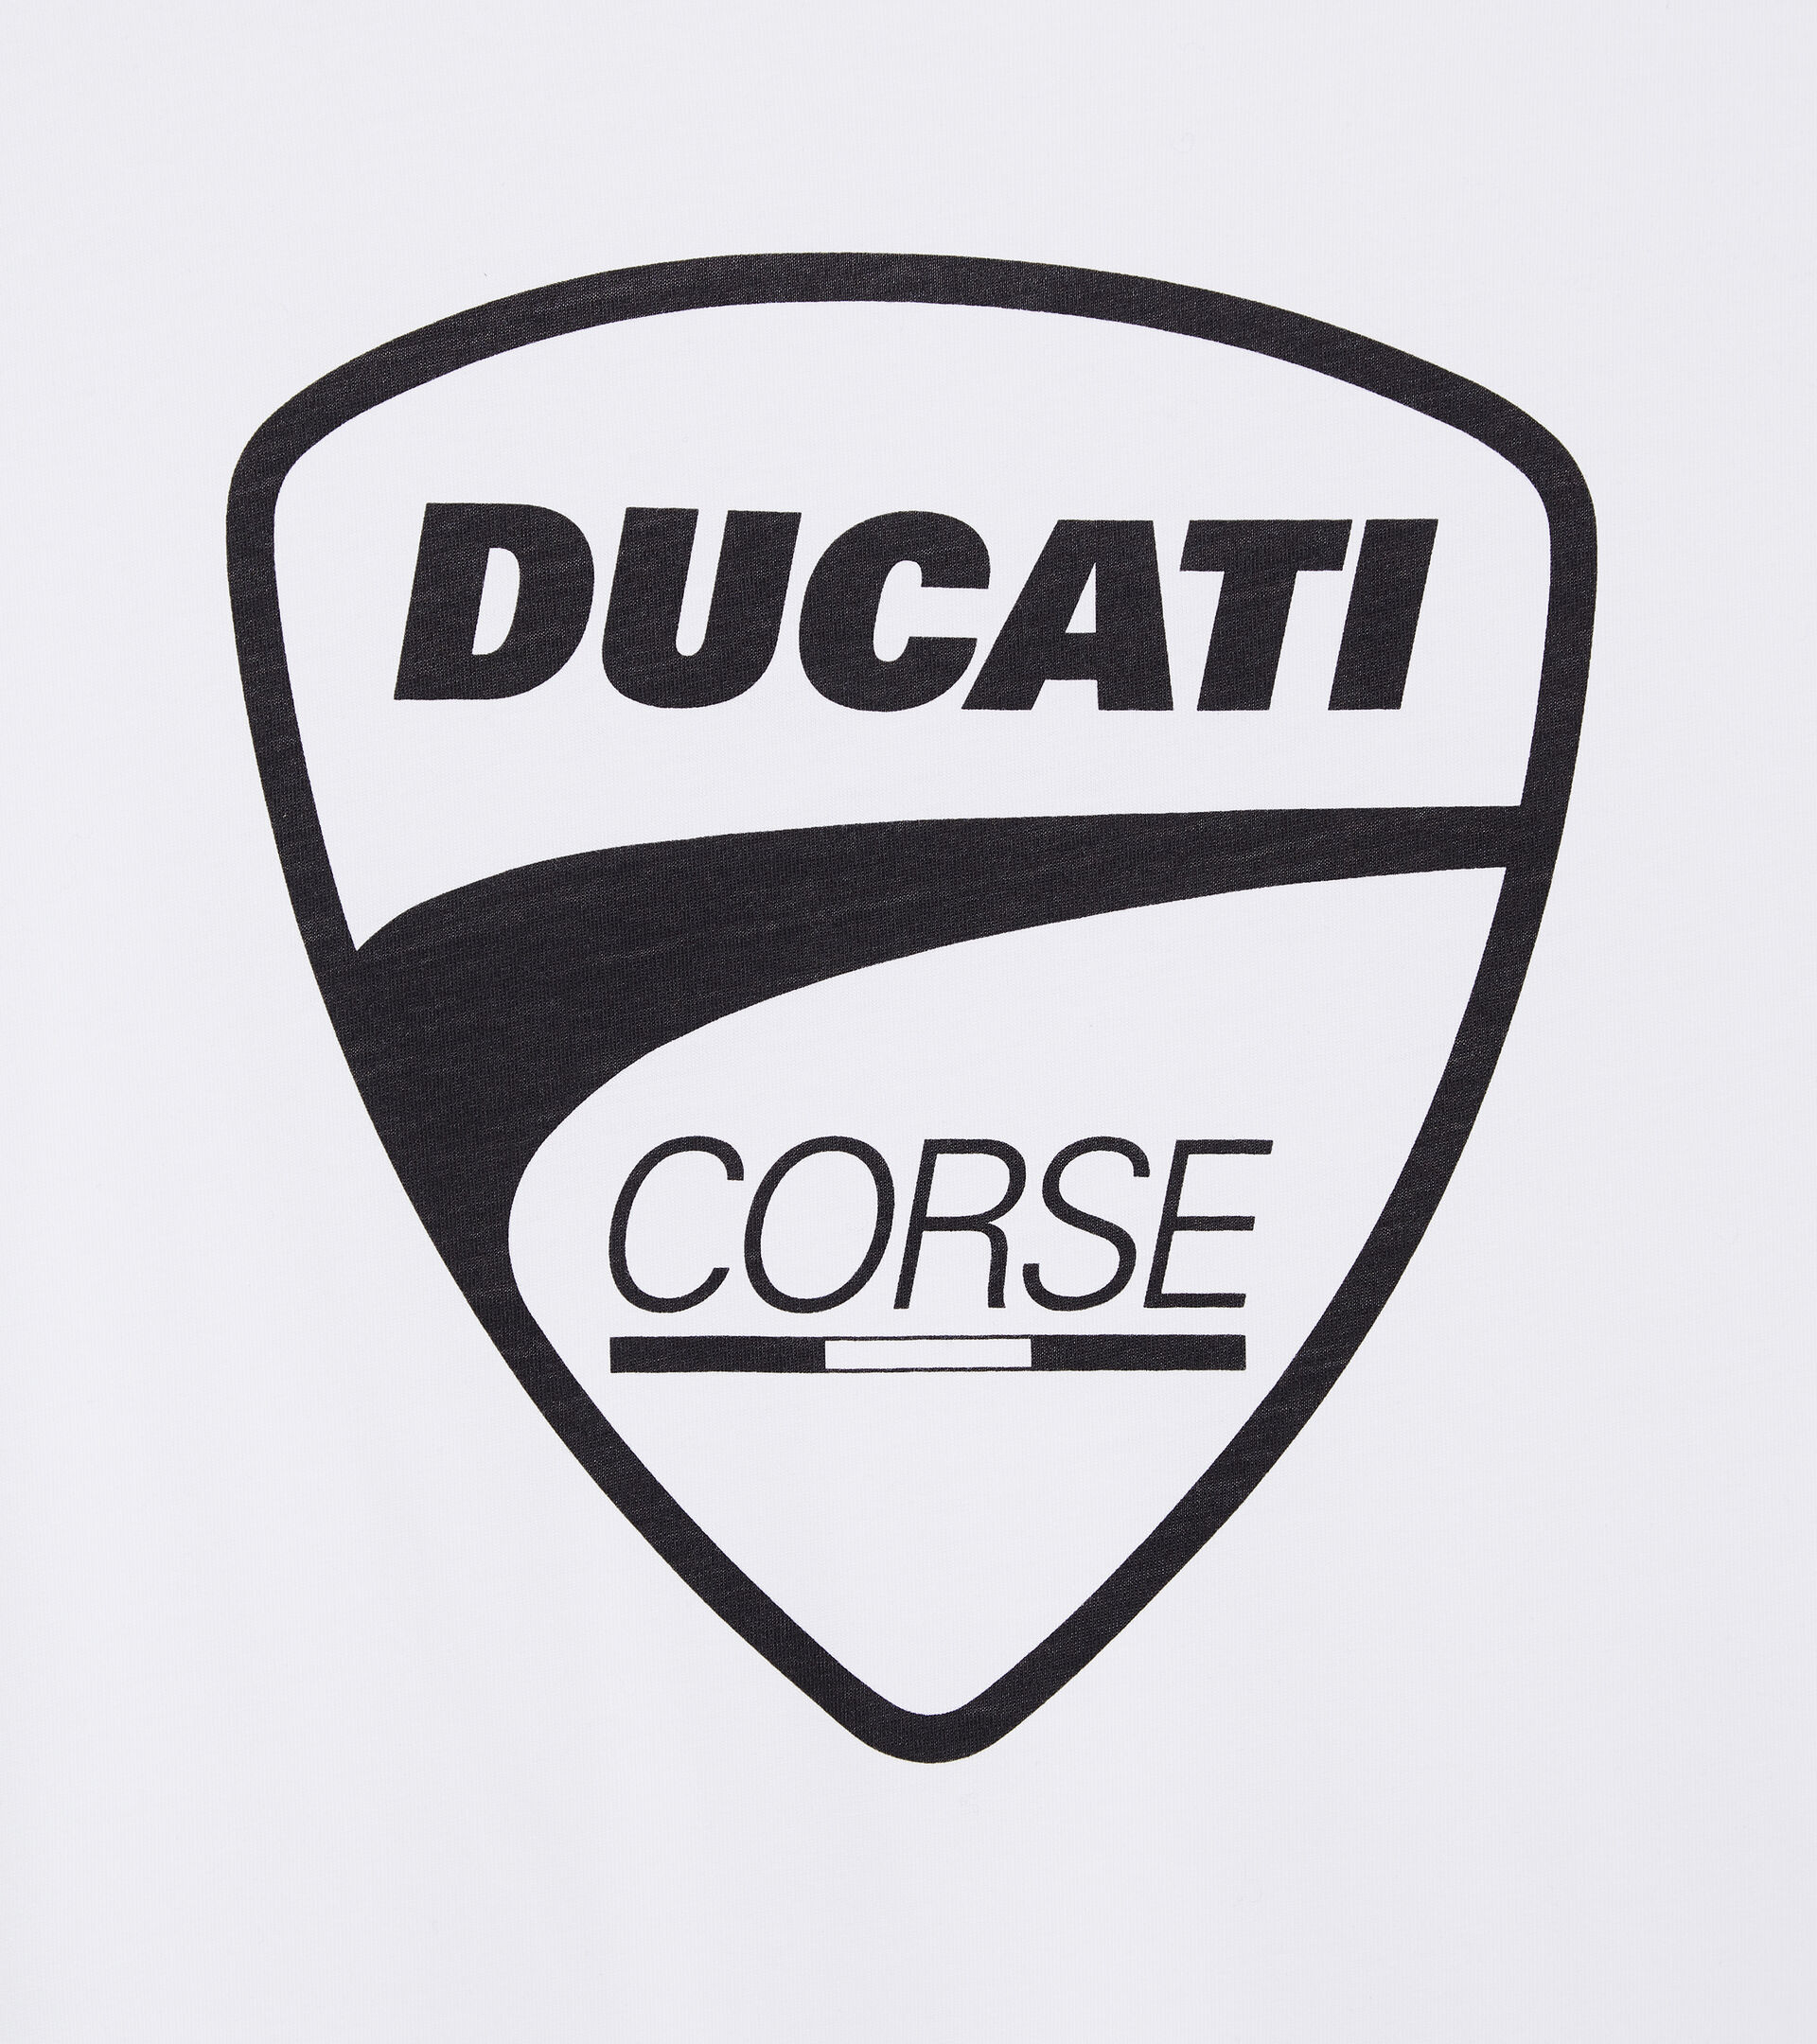 T-shirt manica corta - Diadora Utility x Ducati Corse T-SHIRT GRAPHIC DUCATI BIANCO OTTICO - Utility